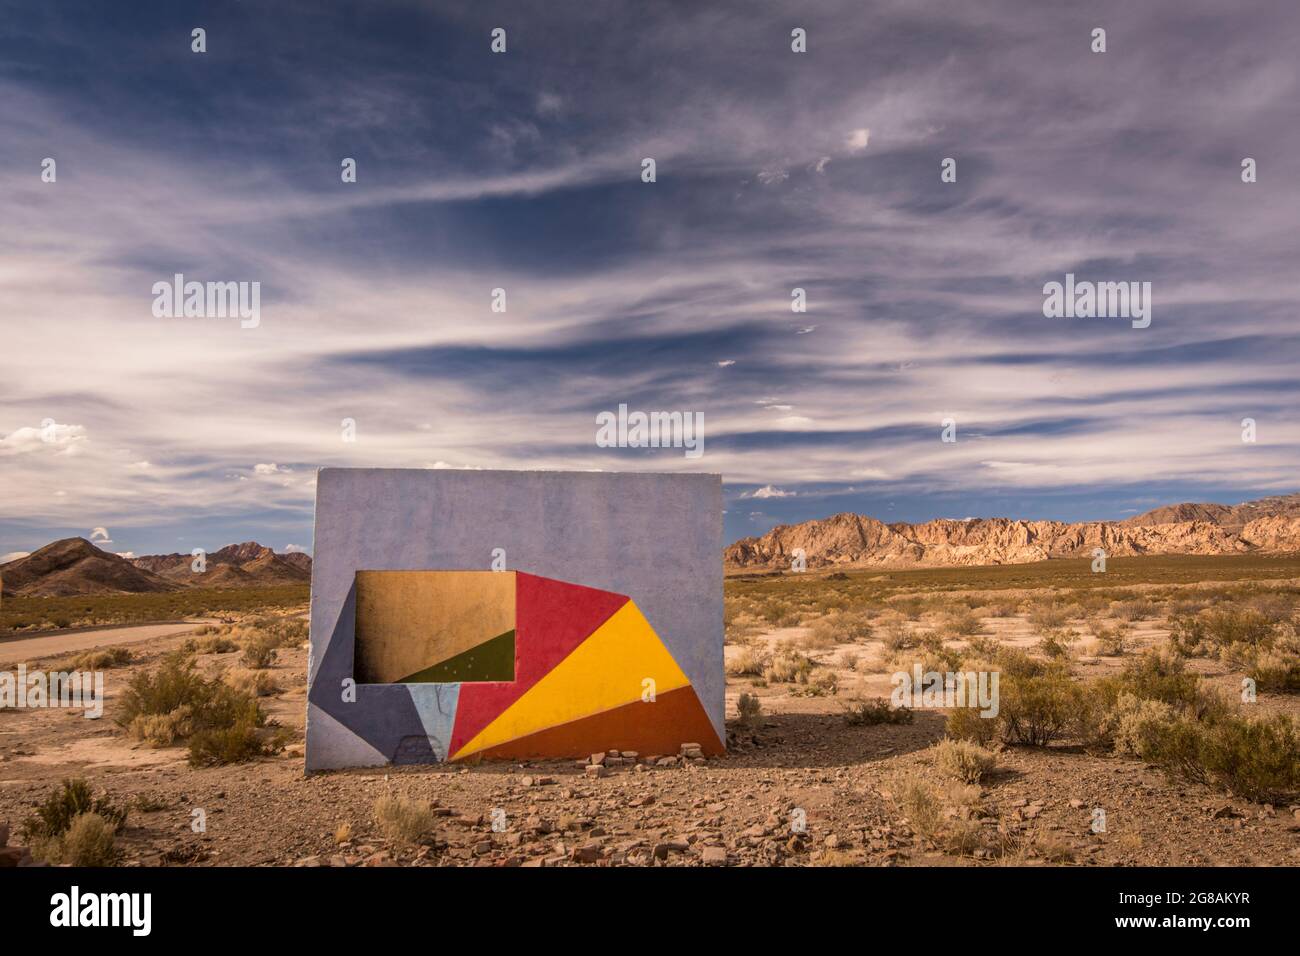 Camera isolata con un muro dipinto con colori in un paesaggio solitario desertico Foto Stock